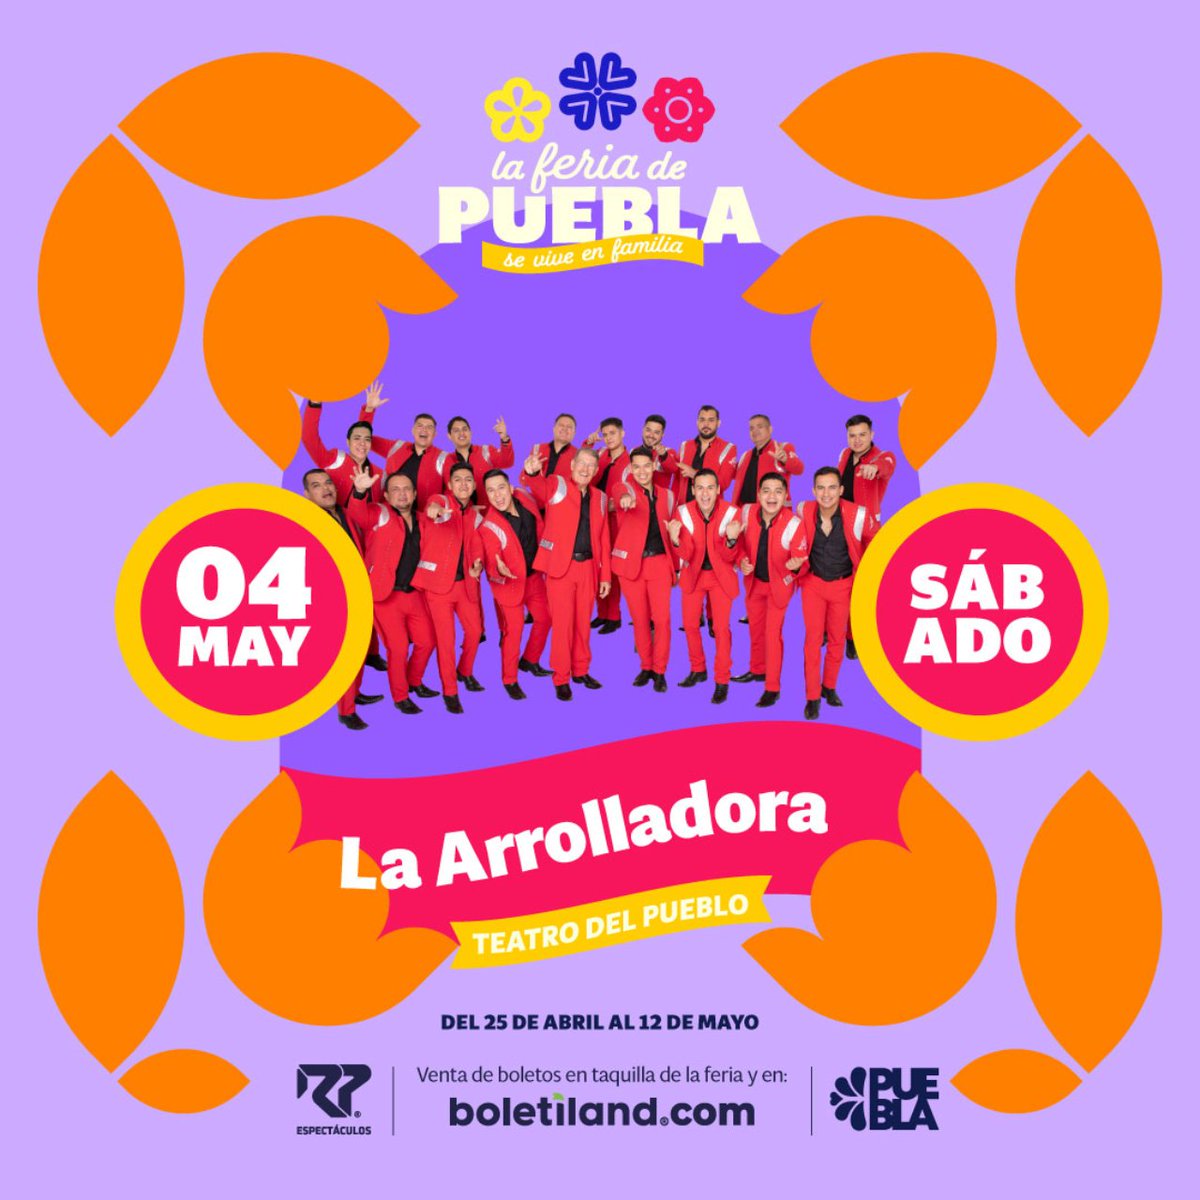 La #FeriadePuebla #SeViveEnFamilia con los 18 conciertos que se llevarán a cabo en el Teatro del Pueblo. Más información: boletiland.com/evento/Feria-d…………………… facebook.com/LaFeriaDePuebla